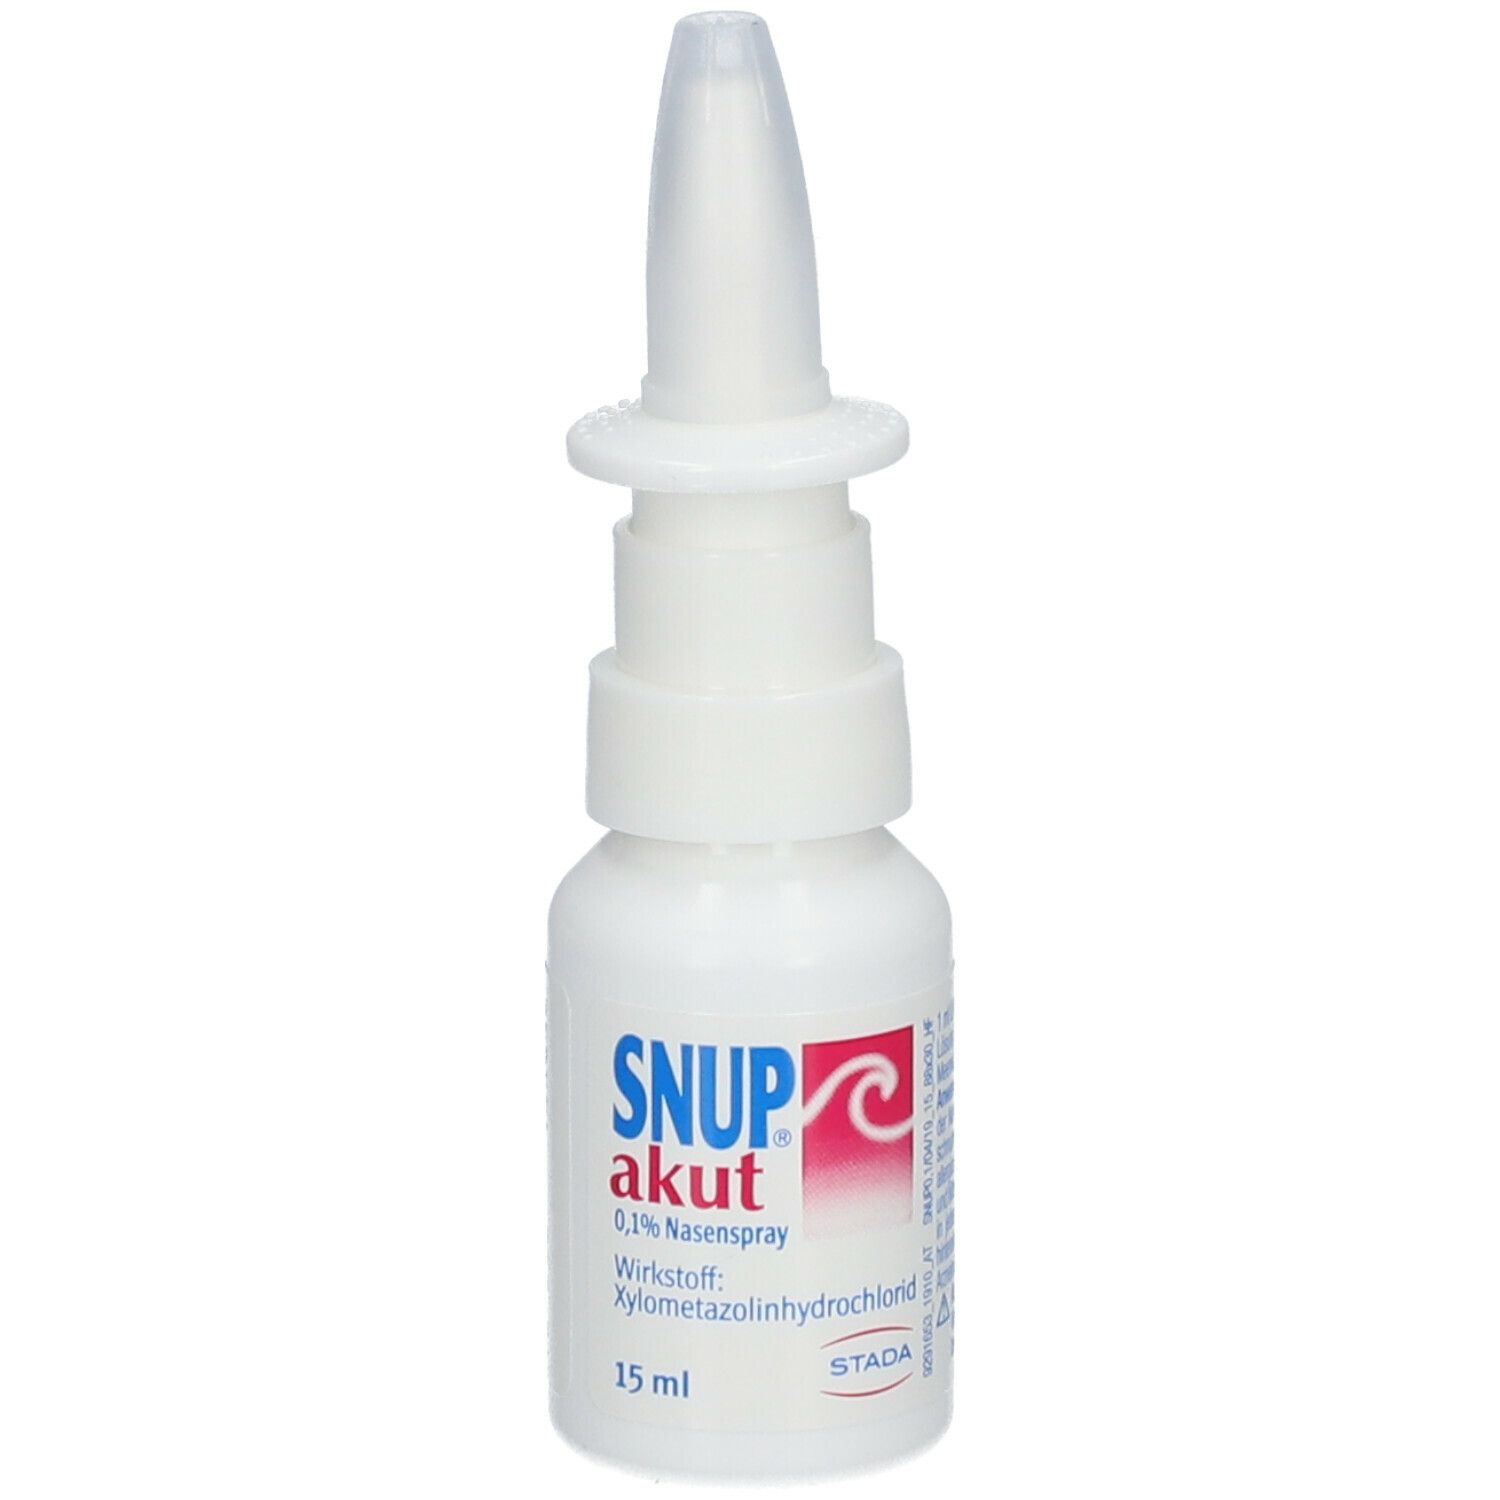 Snup® akut 0,1% Nasenspray, plus 0,1% Meerwasser, ohne Konservierungsstoffe